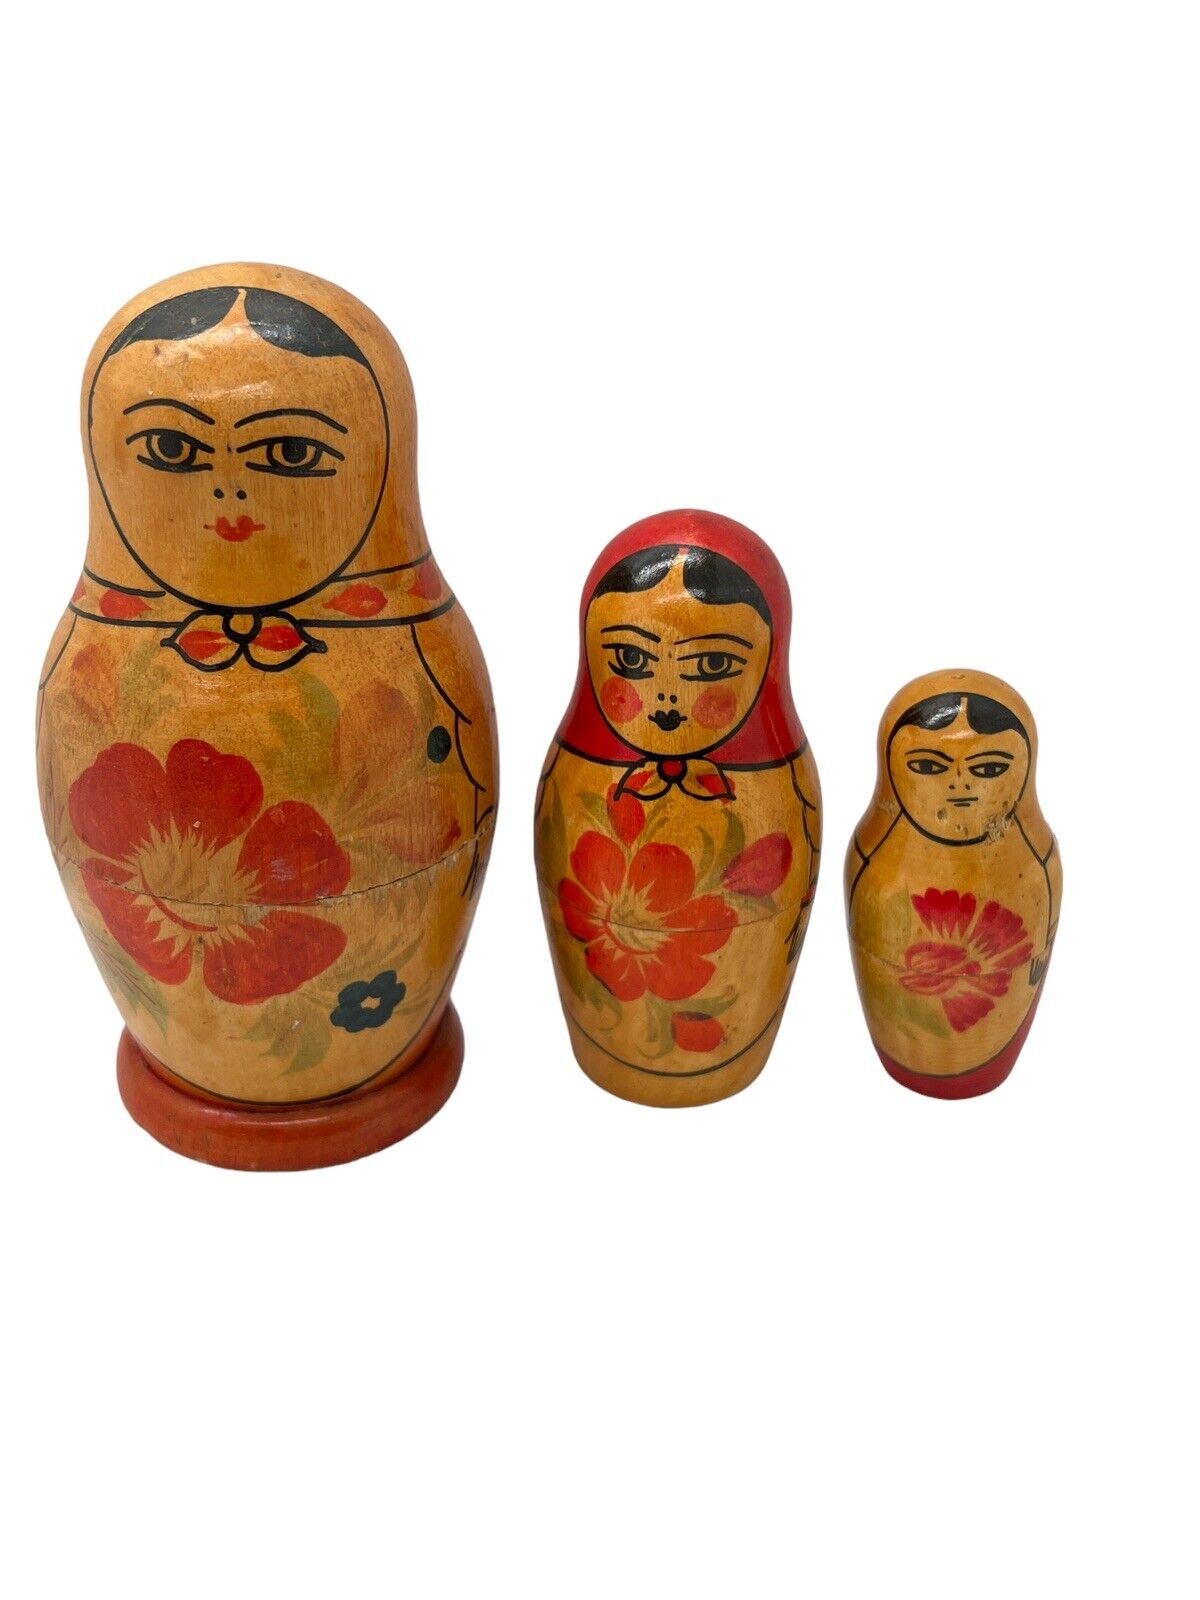 Vintage Matryoshka Nesting Dolls 3 Piece Set